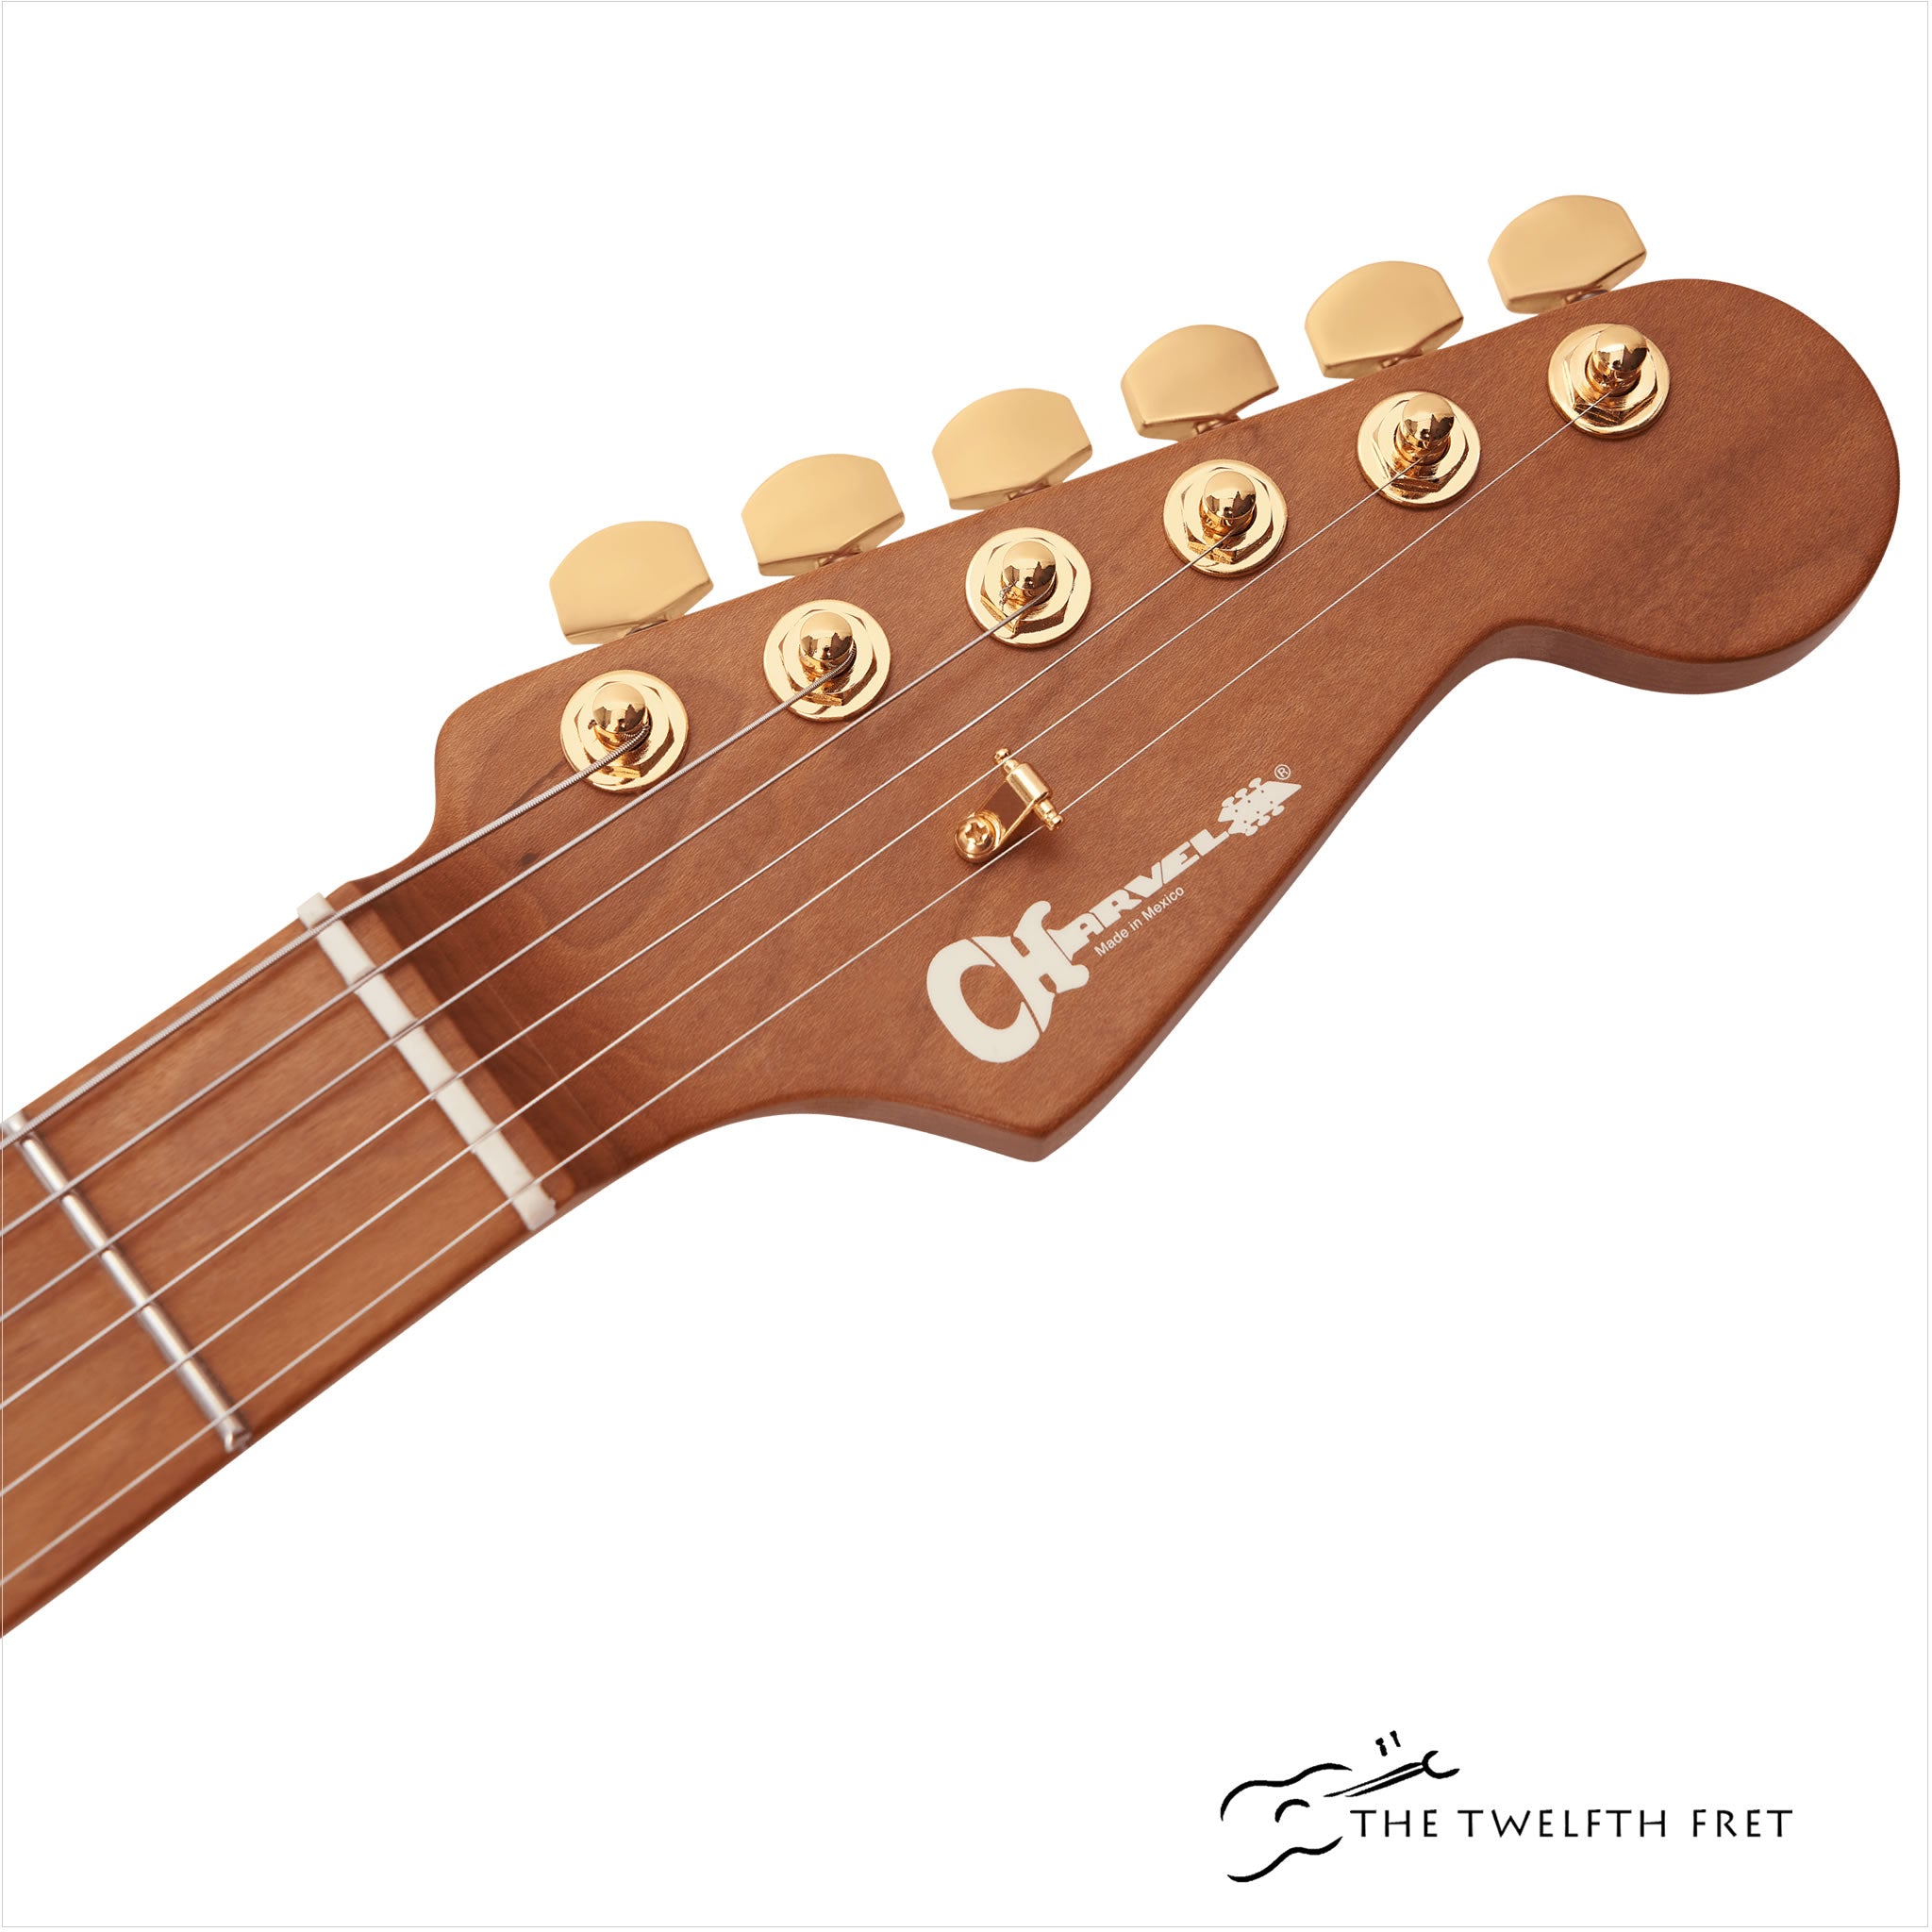 Charvel Pro-Mod DK24 HSH 2PT CM Electric Guitar - The Twelfth Fret